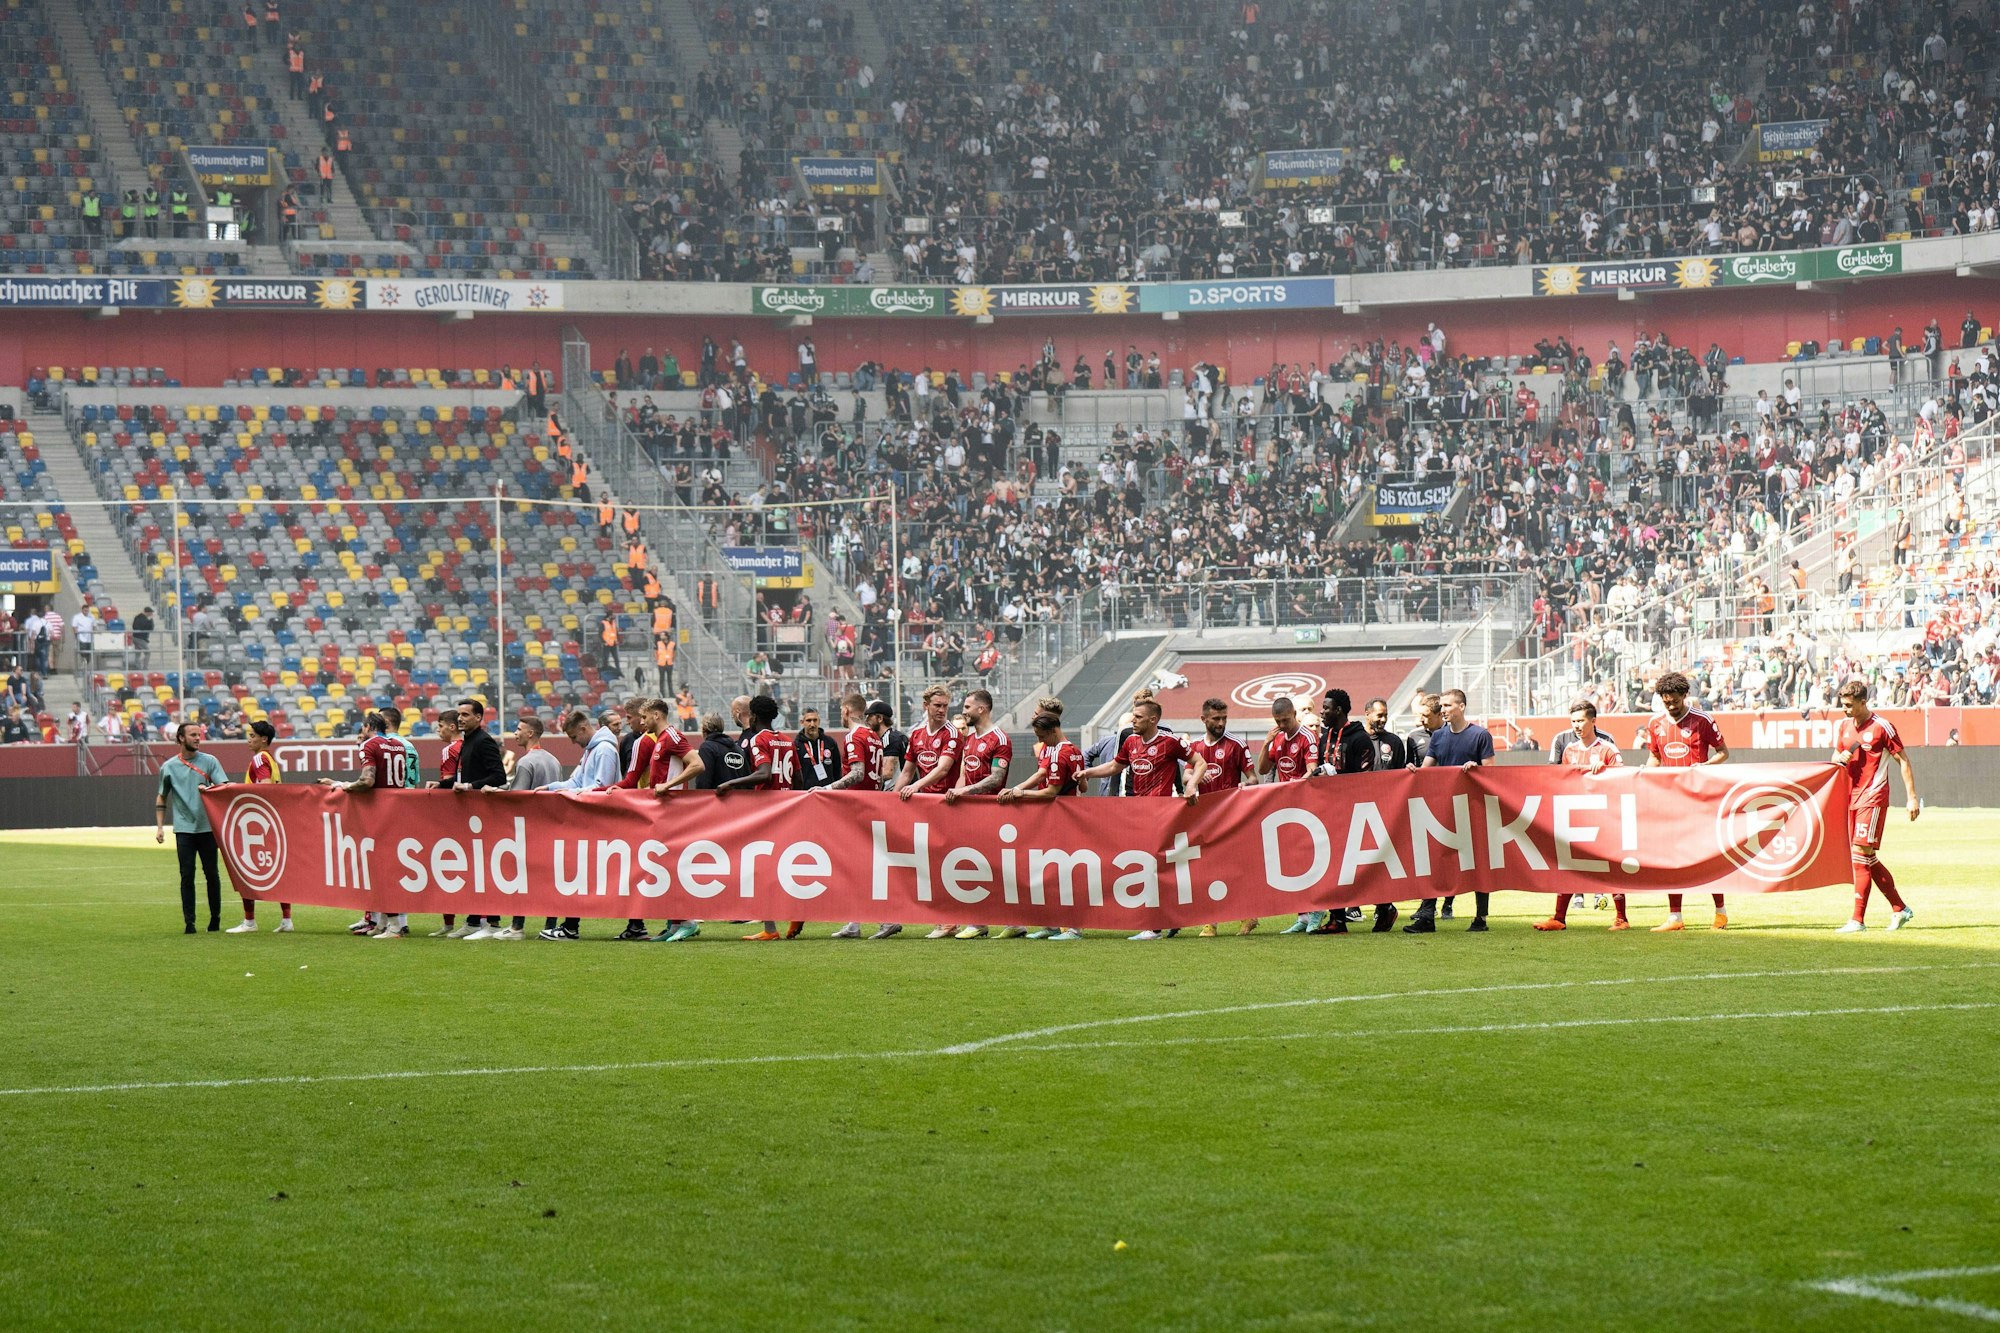 Die Spieler von Fortuna Düsseldorf bedanken sich bei ihren Zuschauern mit einem Banner mit der Aufschrift „Ihr seid unsere Heimat. DANKE!“